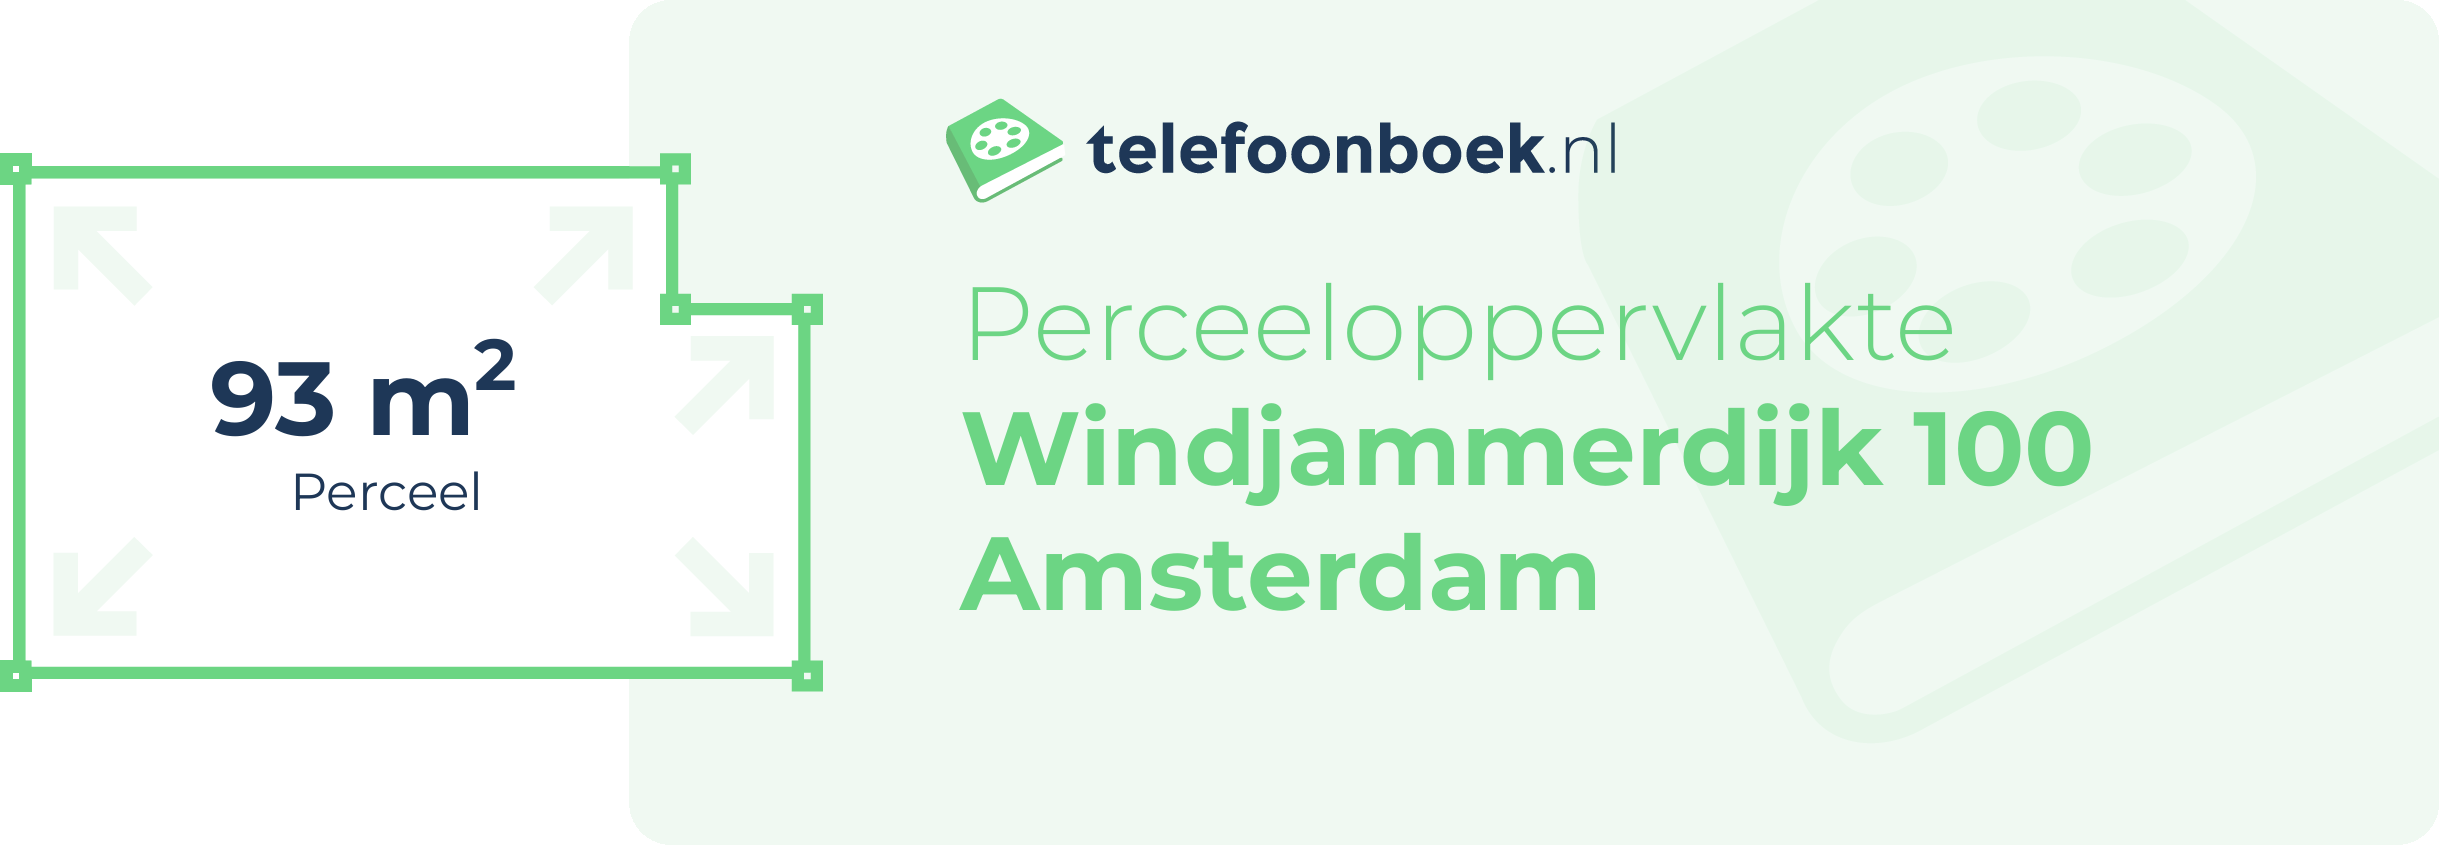 Perceeloppervlakte Windjammerdijk 100 Amsterdam